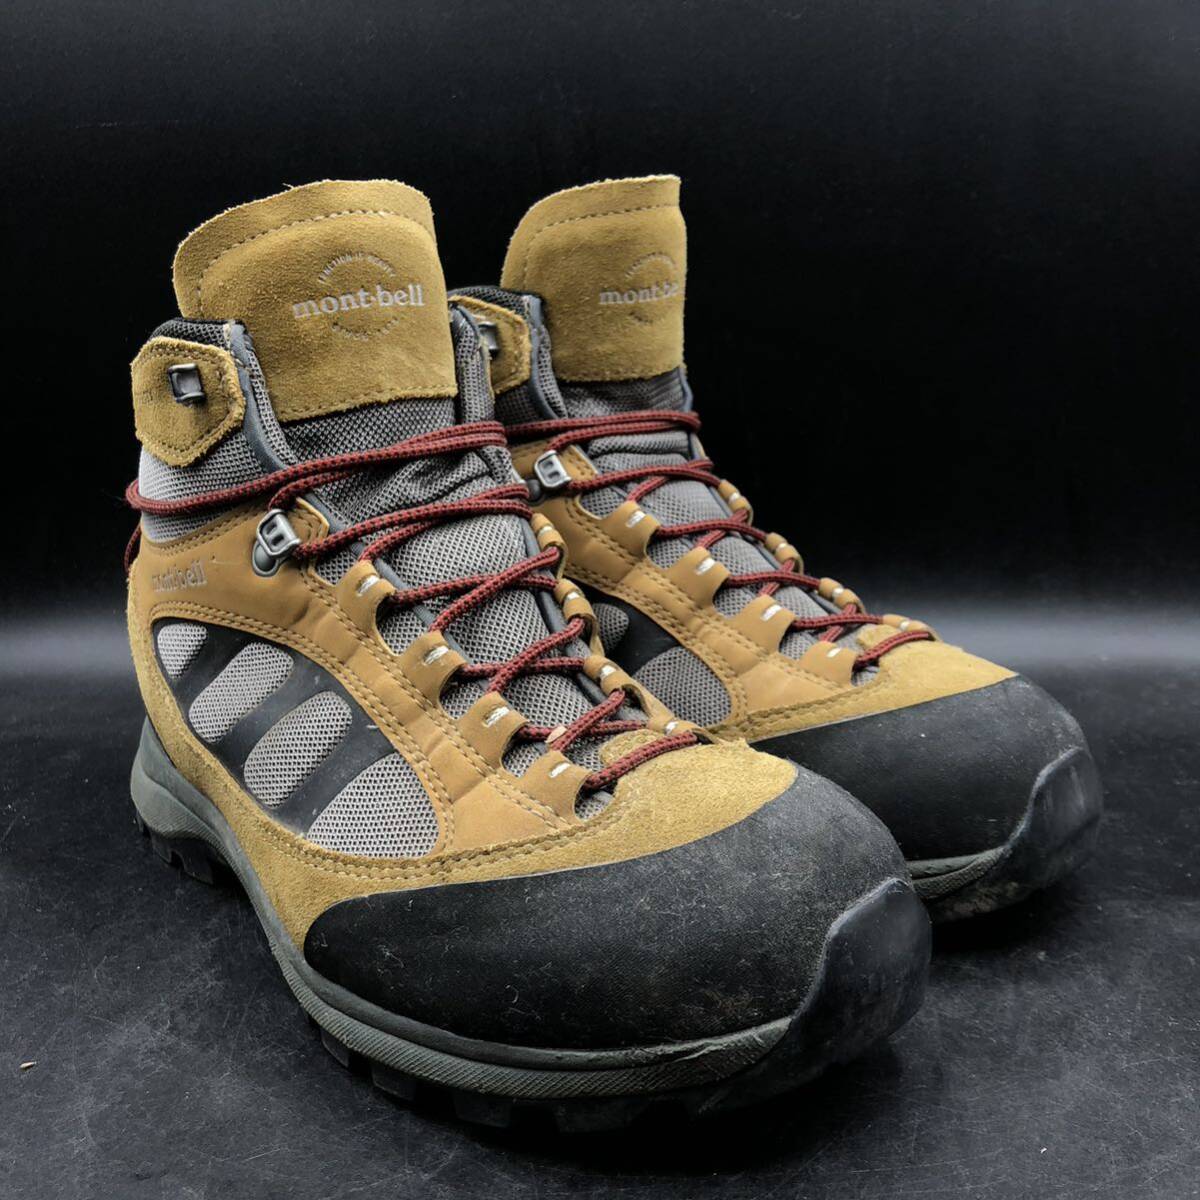 M2790 mont-bell モンベル トレッキングシューズ ブーツ GORE-TEX ゴアテックス メンズ US9/27.0cm ブラウン系 登山靴の画像2